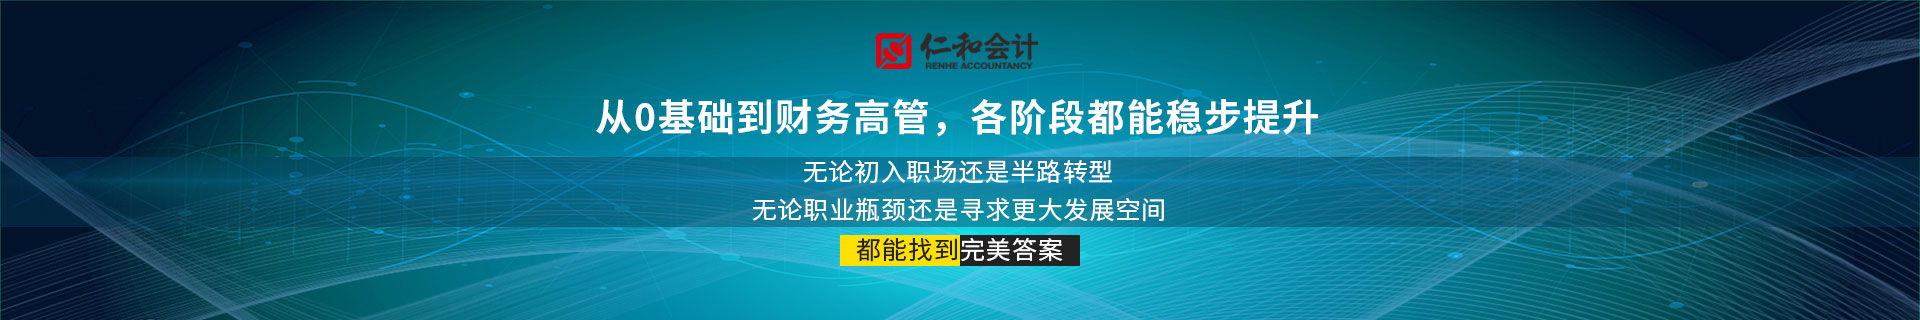 北京丰台科技园仁和会计培训机构